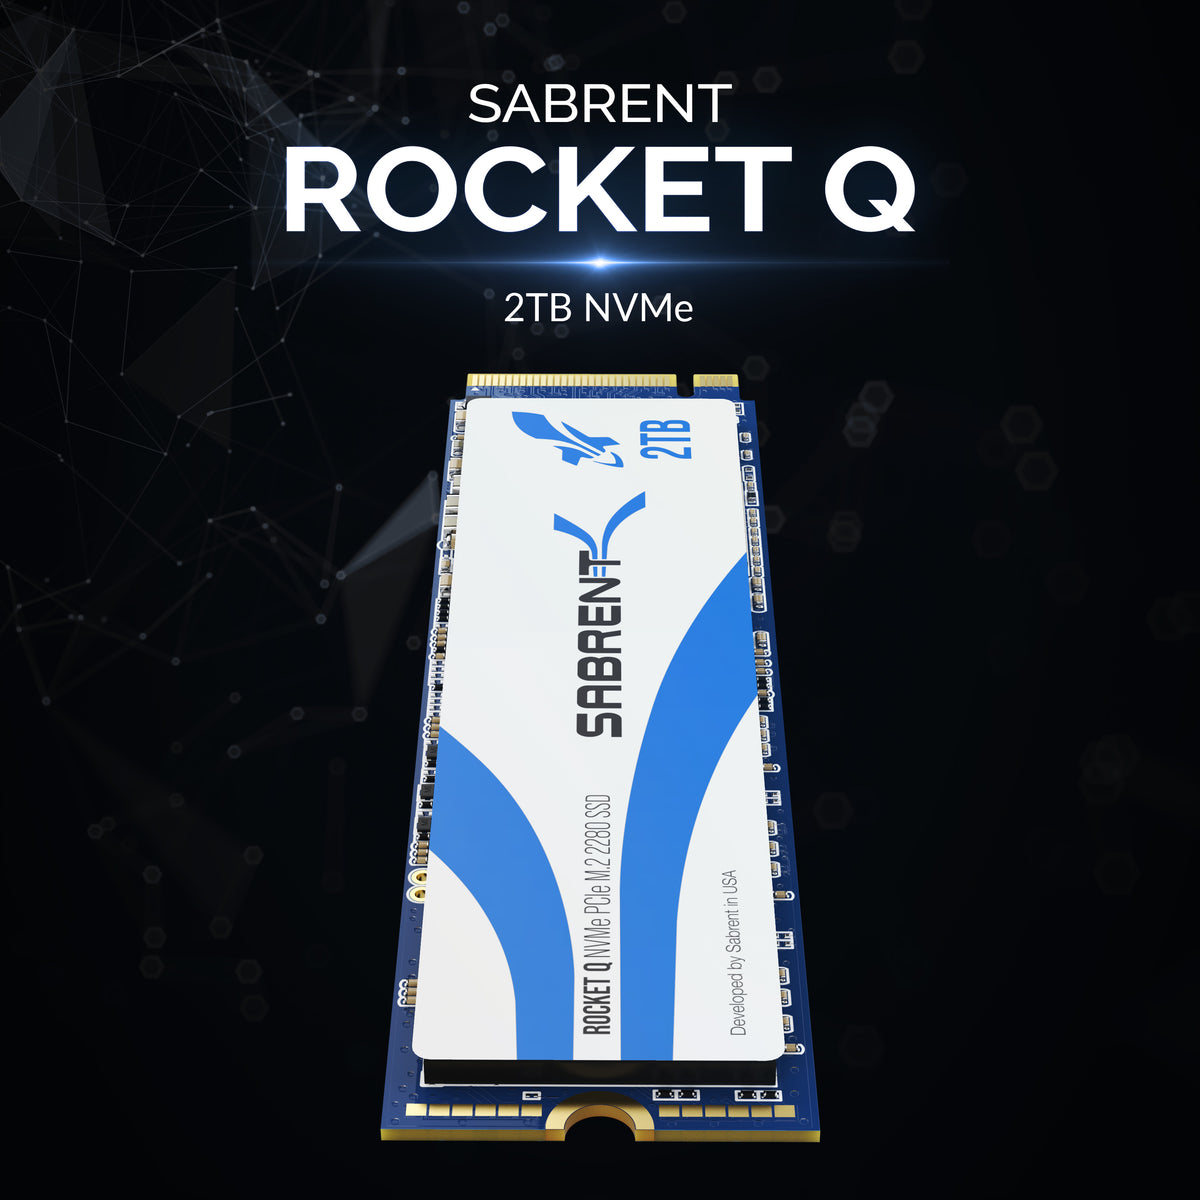 Rocket Q NVMe SSD